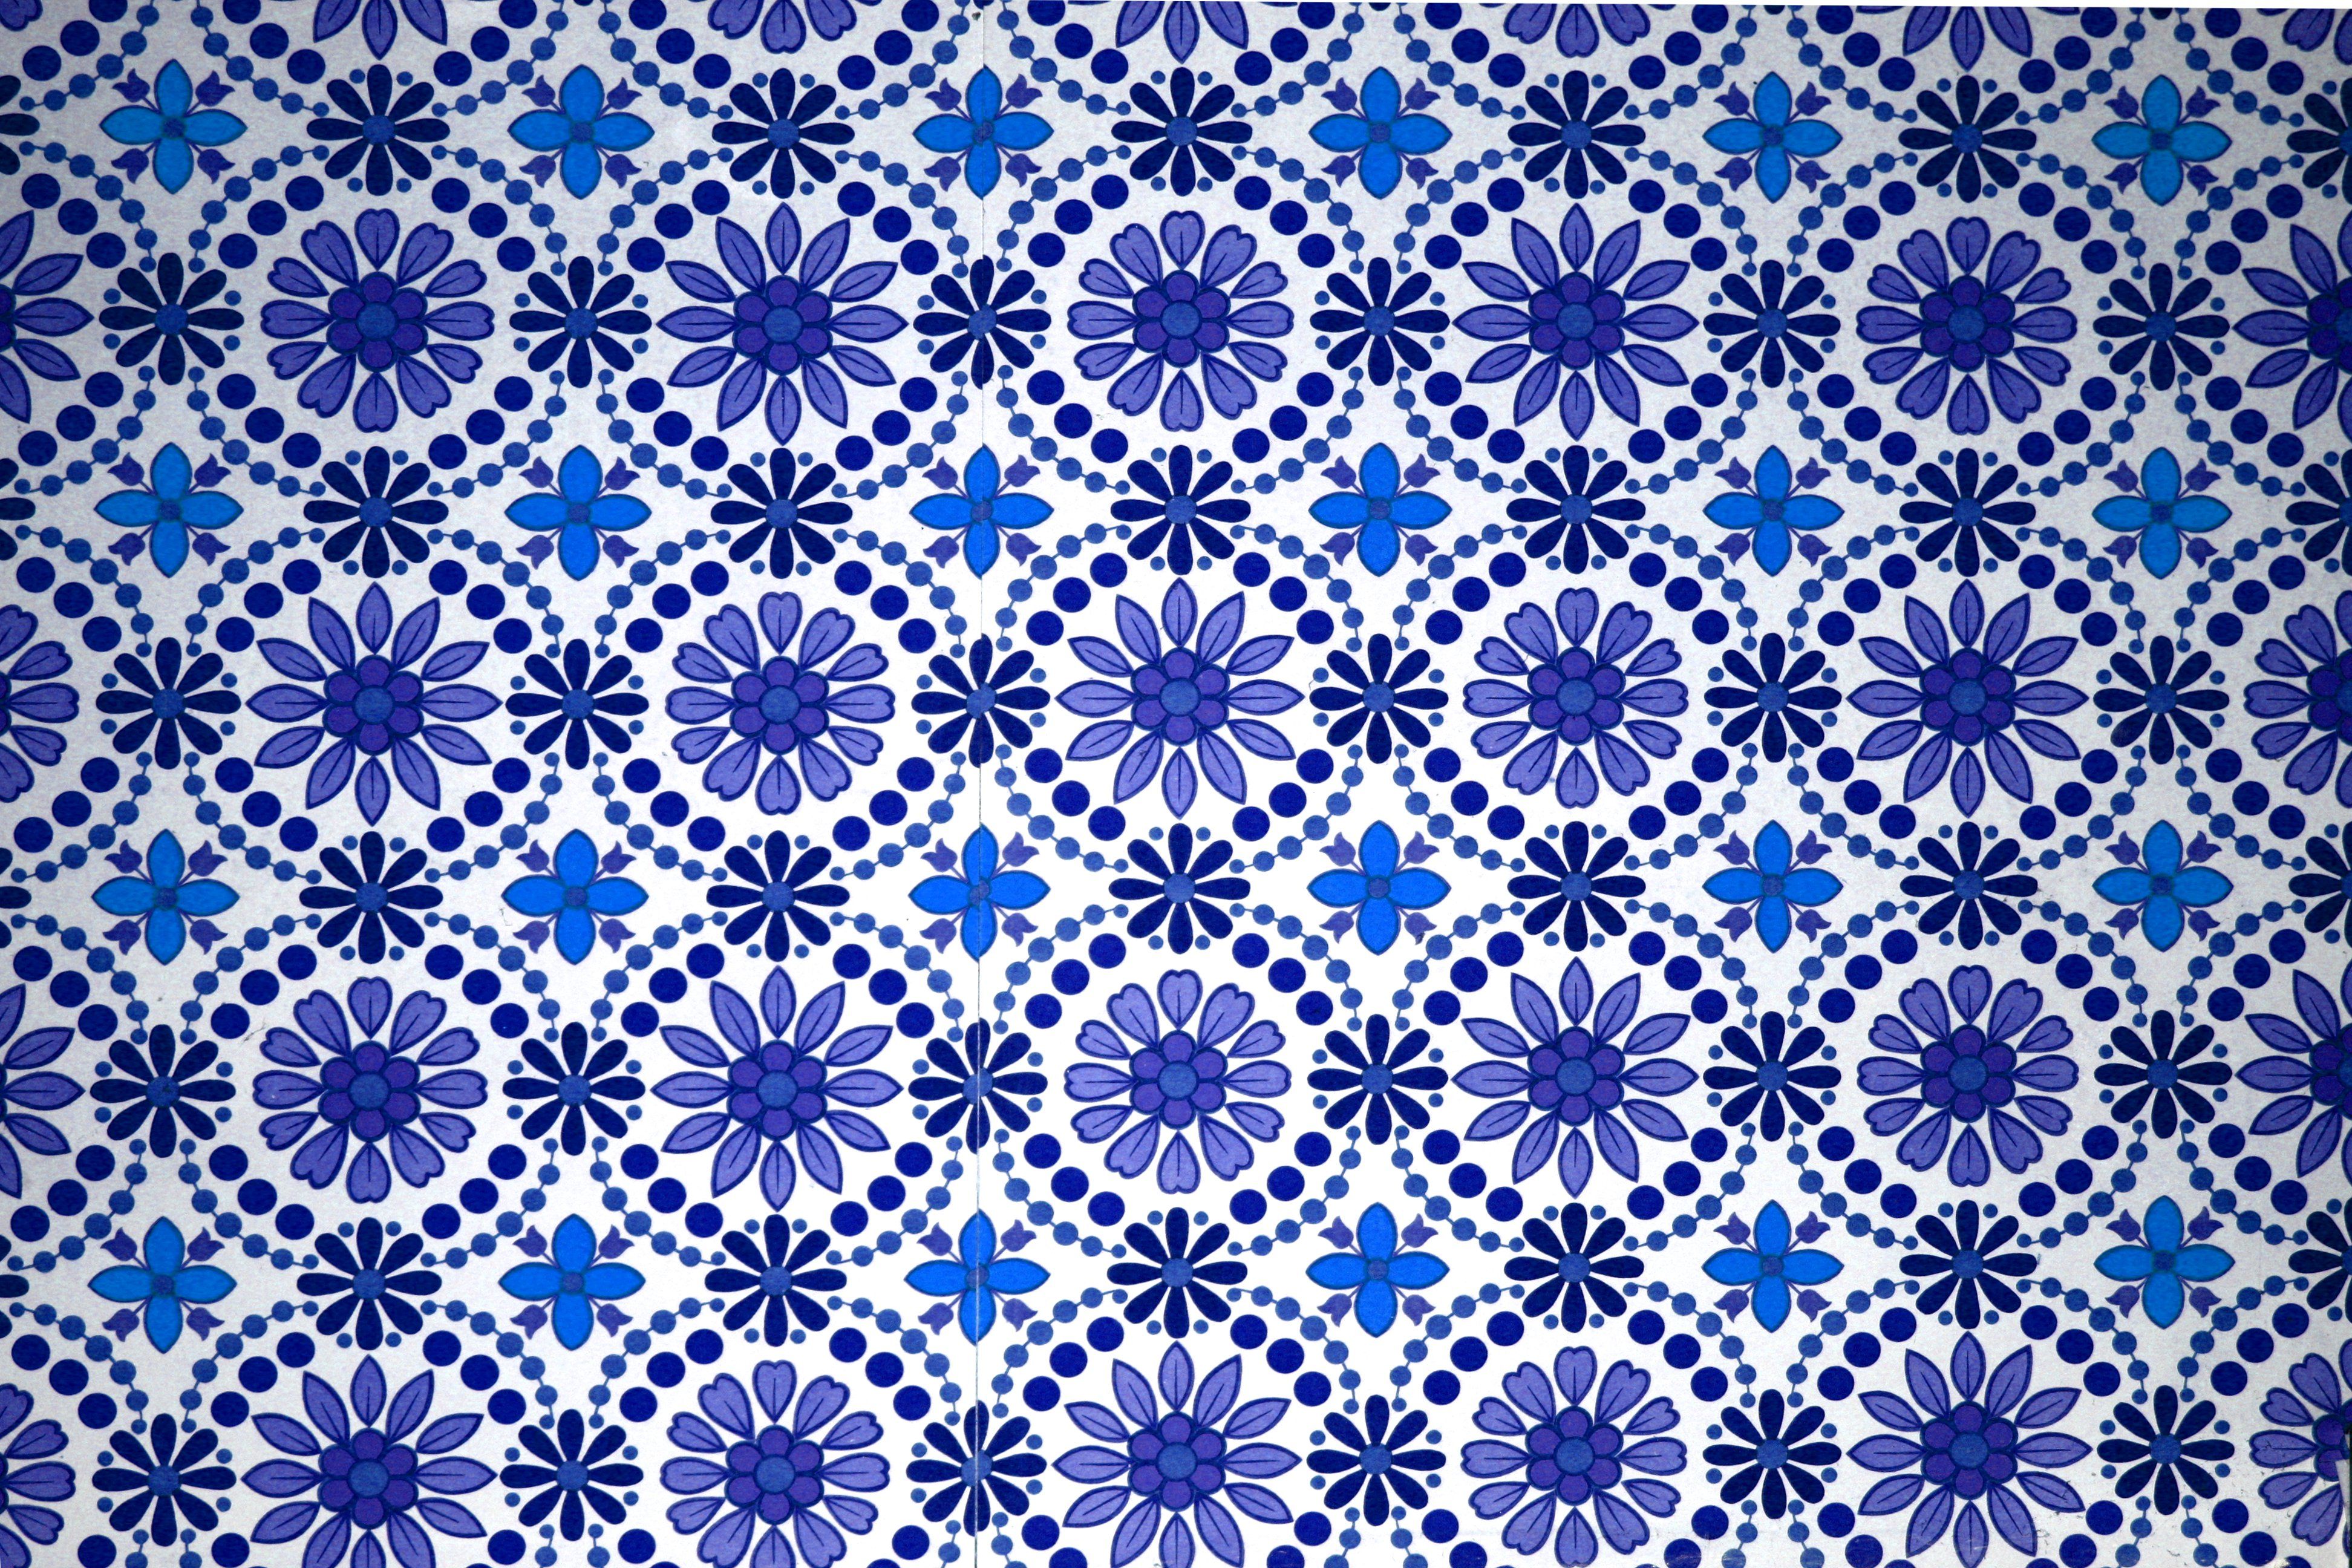 Blue Flowers Wallpaper Texture Picture. Free Photograph. Photo Public Domain